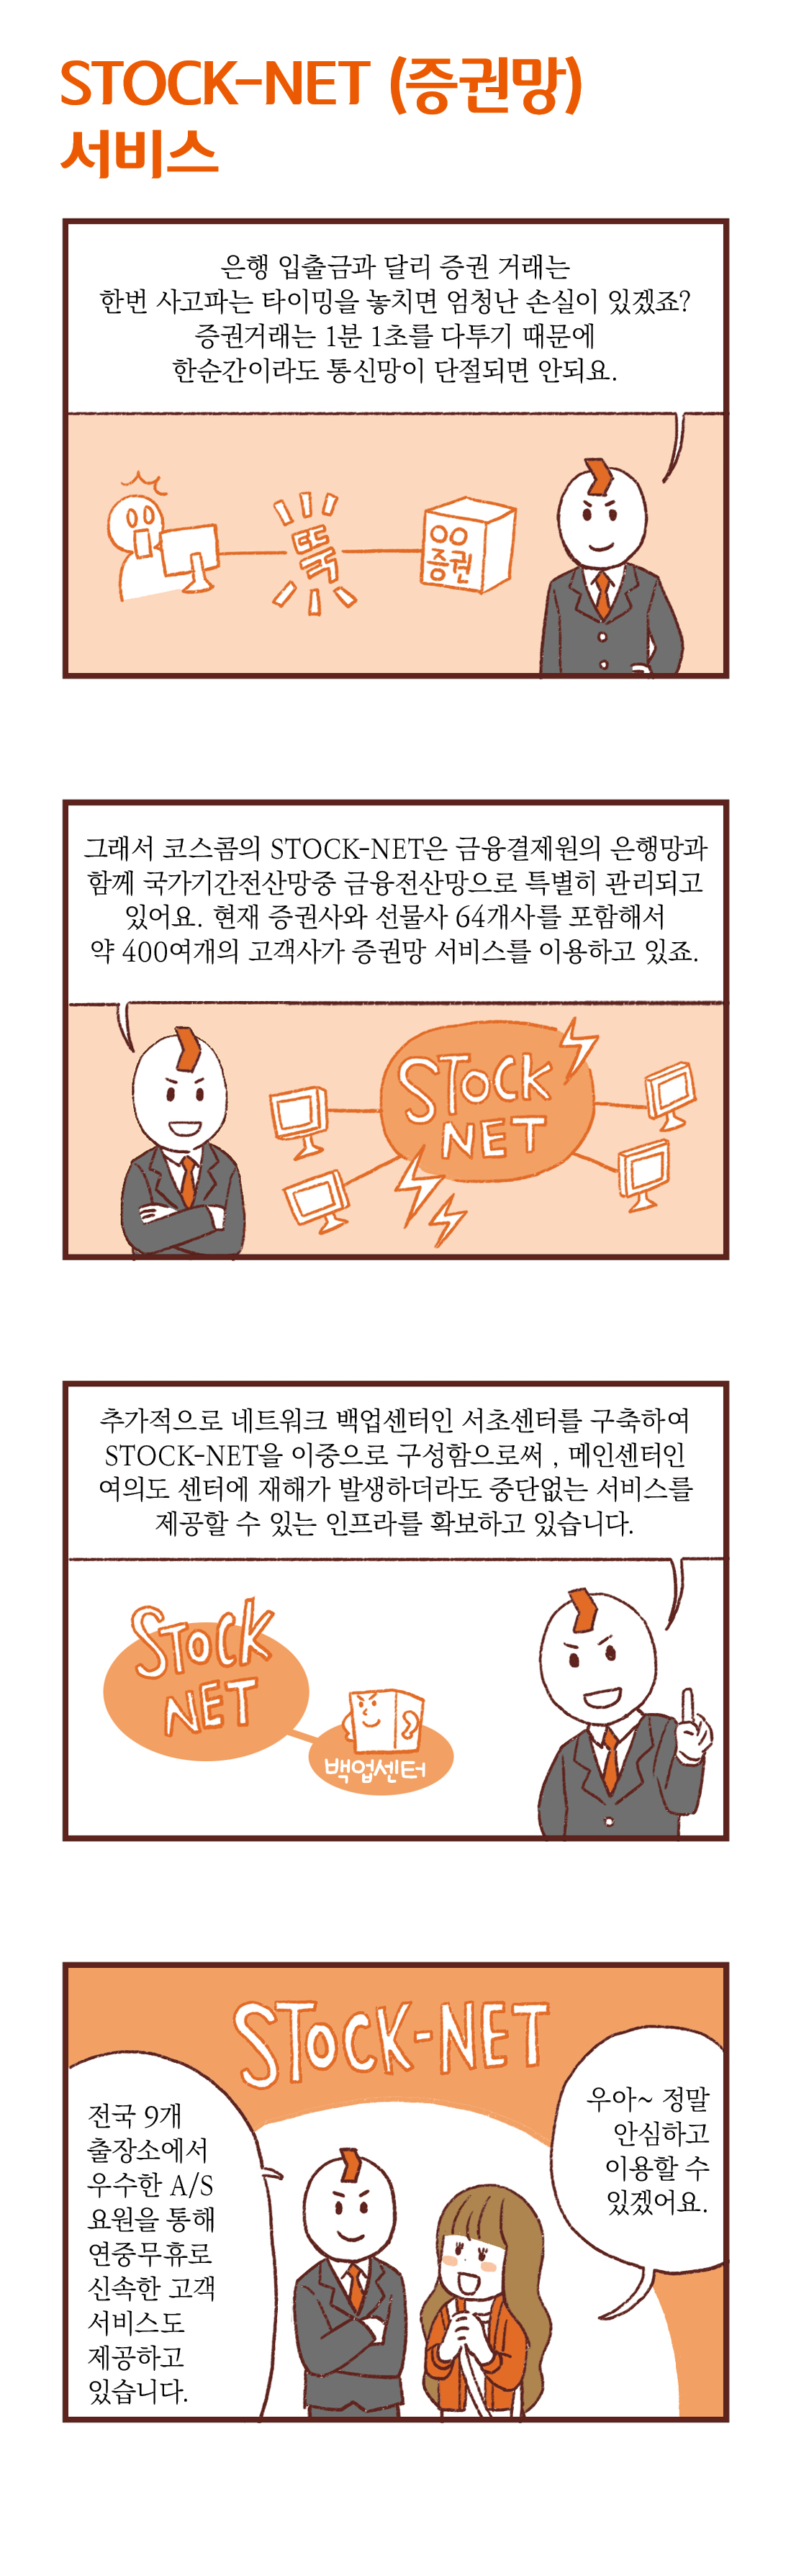 제목 : STOCK-NET(증권망)서비스